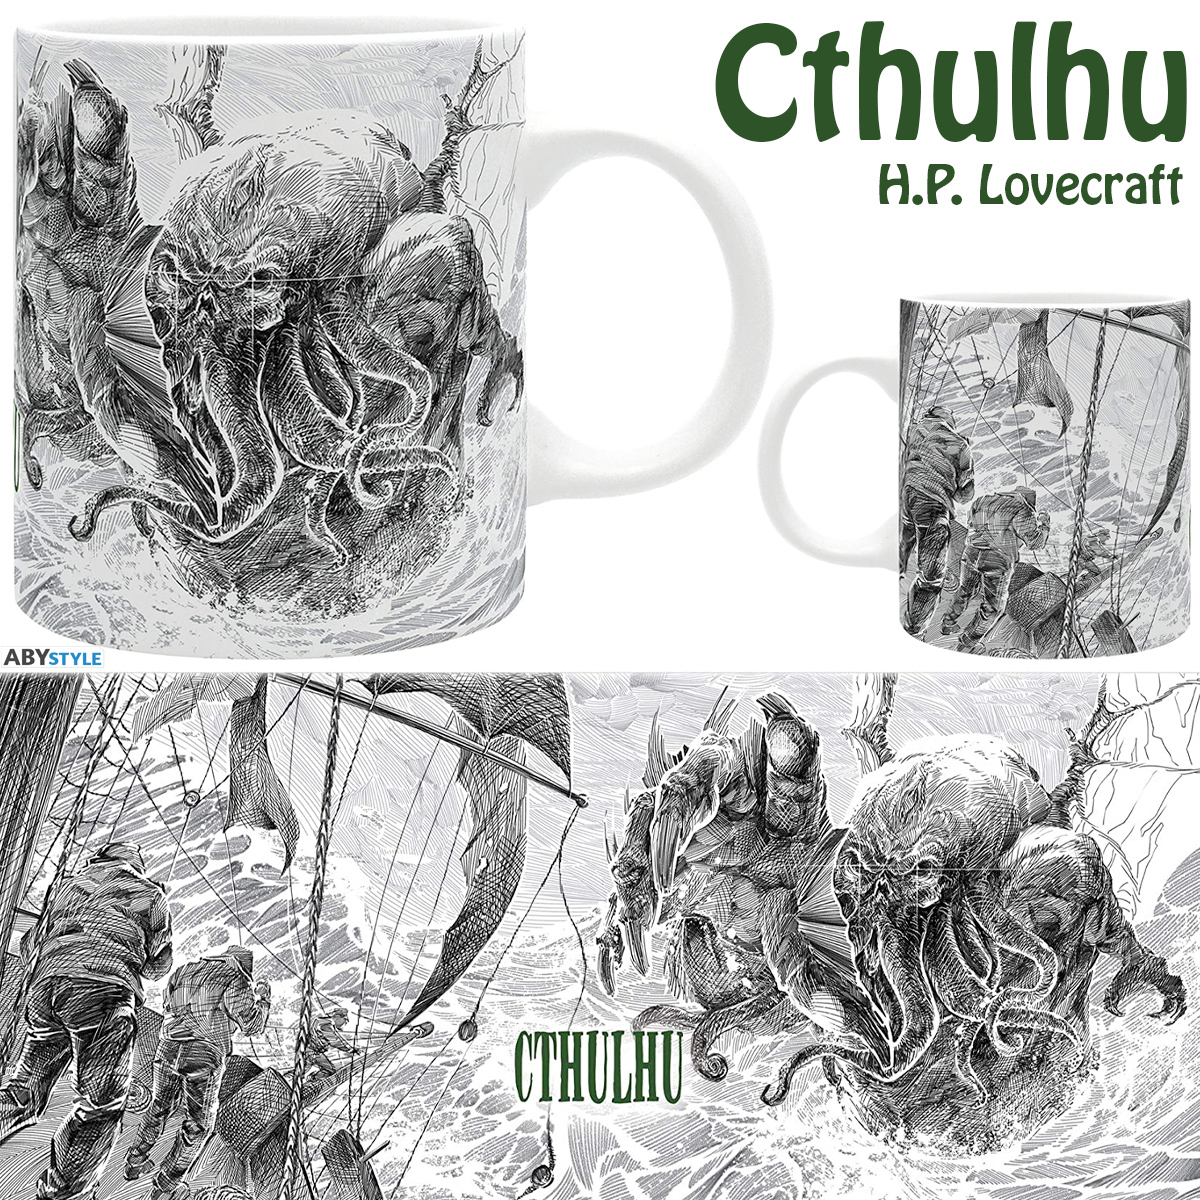 Caneca Cthulhu Ataca com Ilustração em Preto-e-Branco (H.P. Lovecraft)